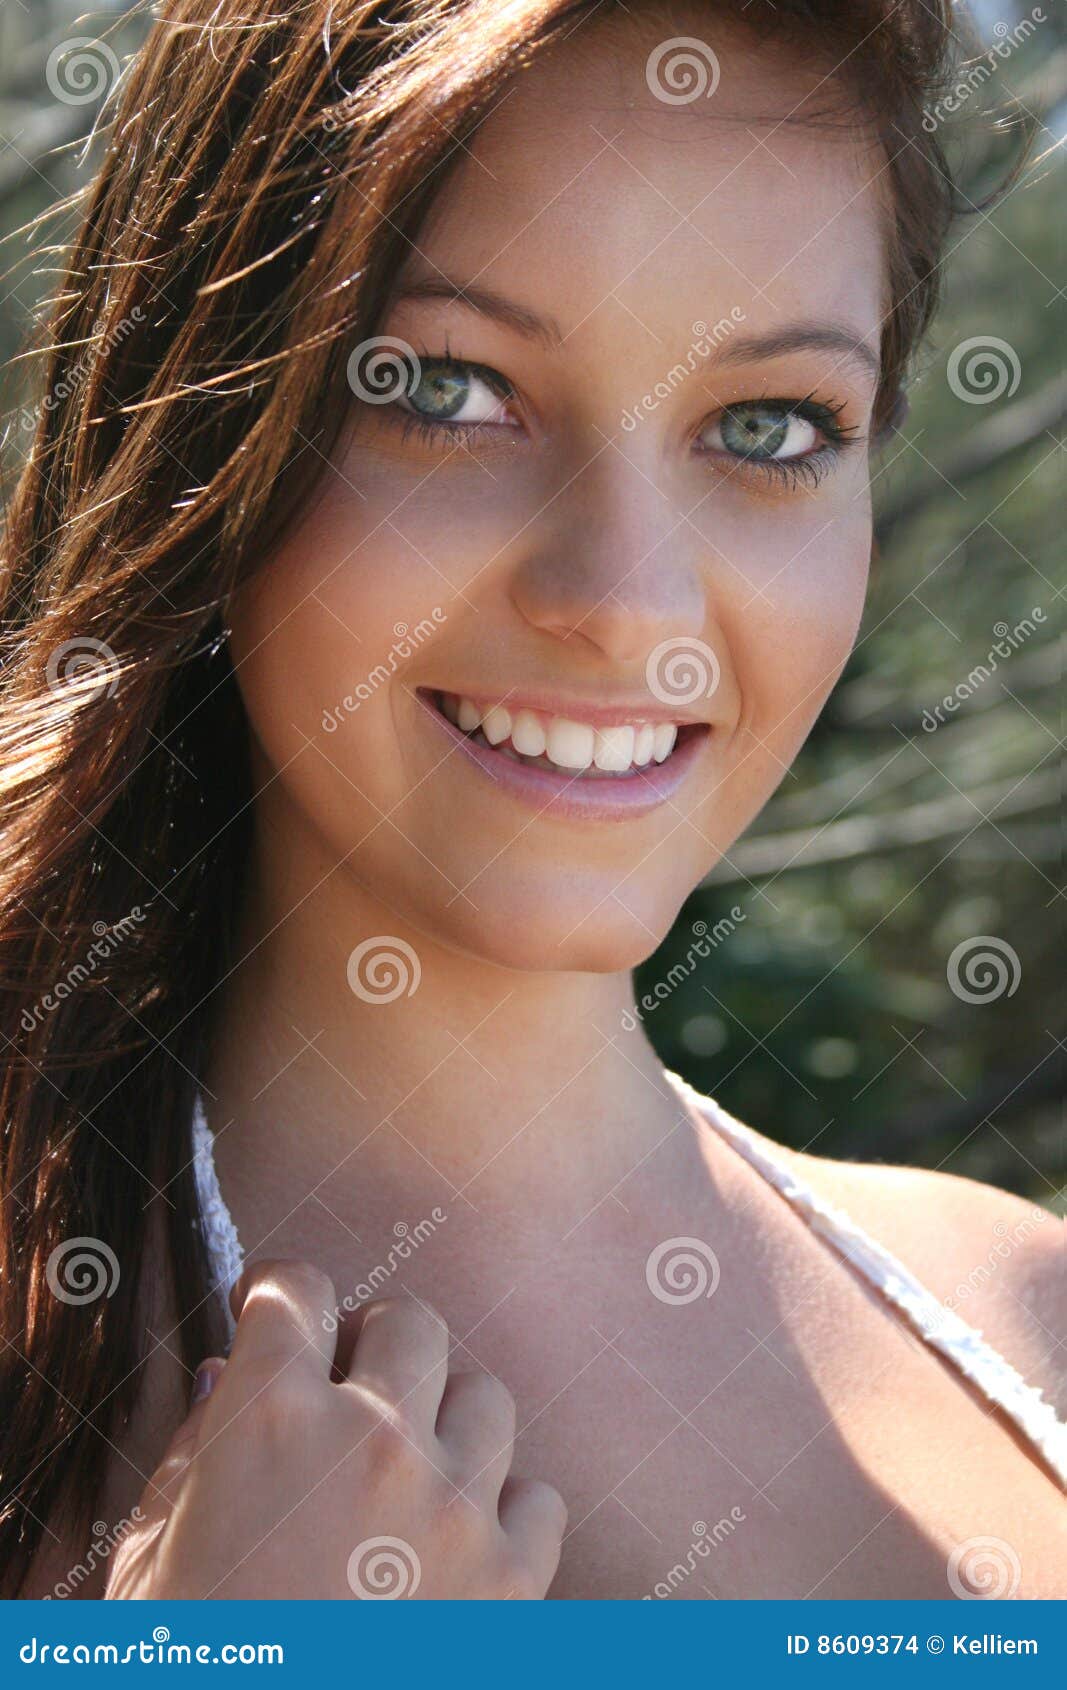 smiling pretty woman